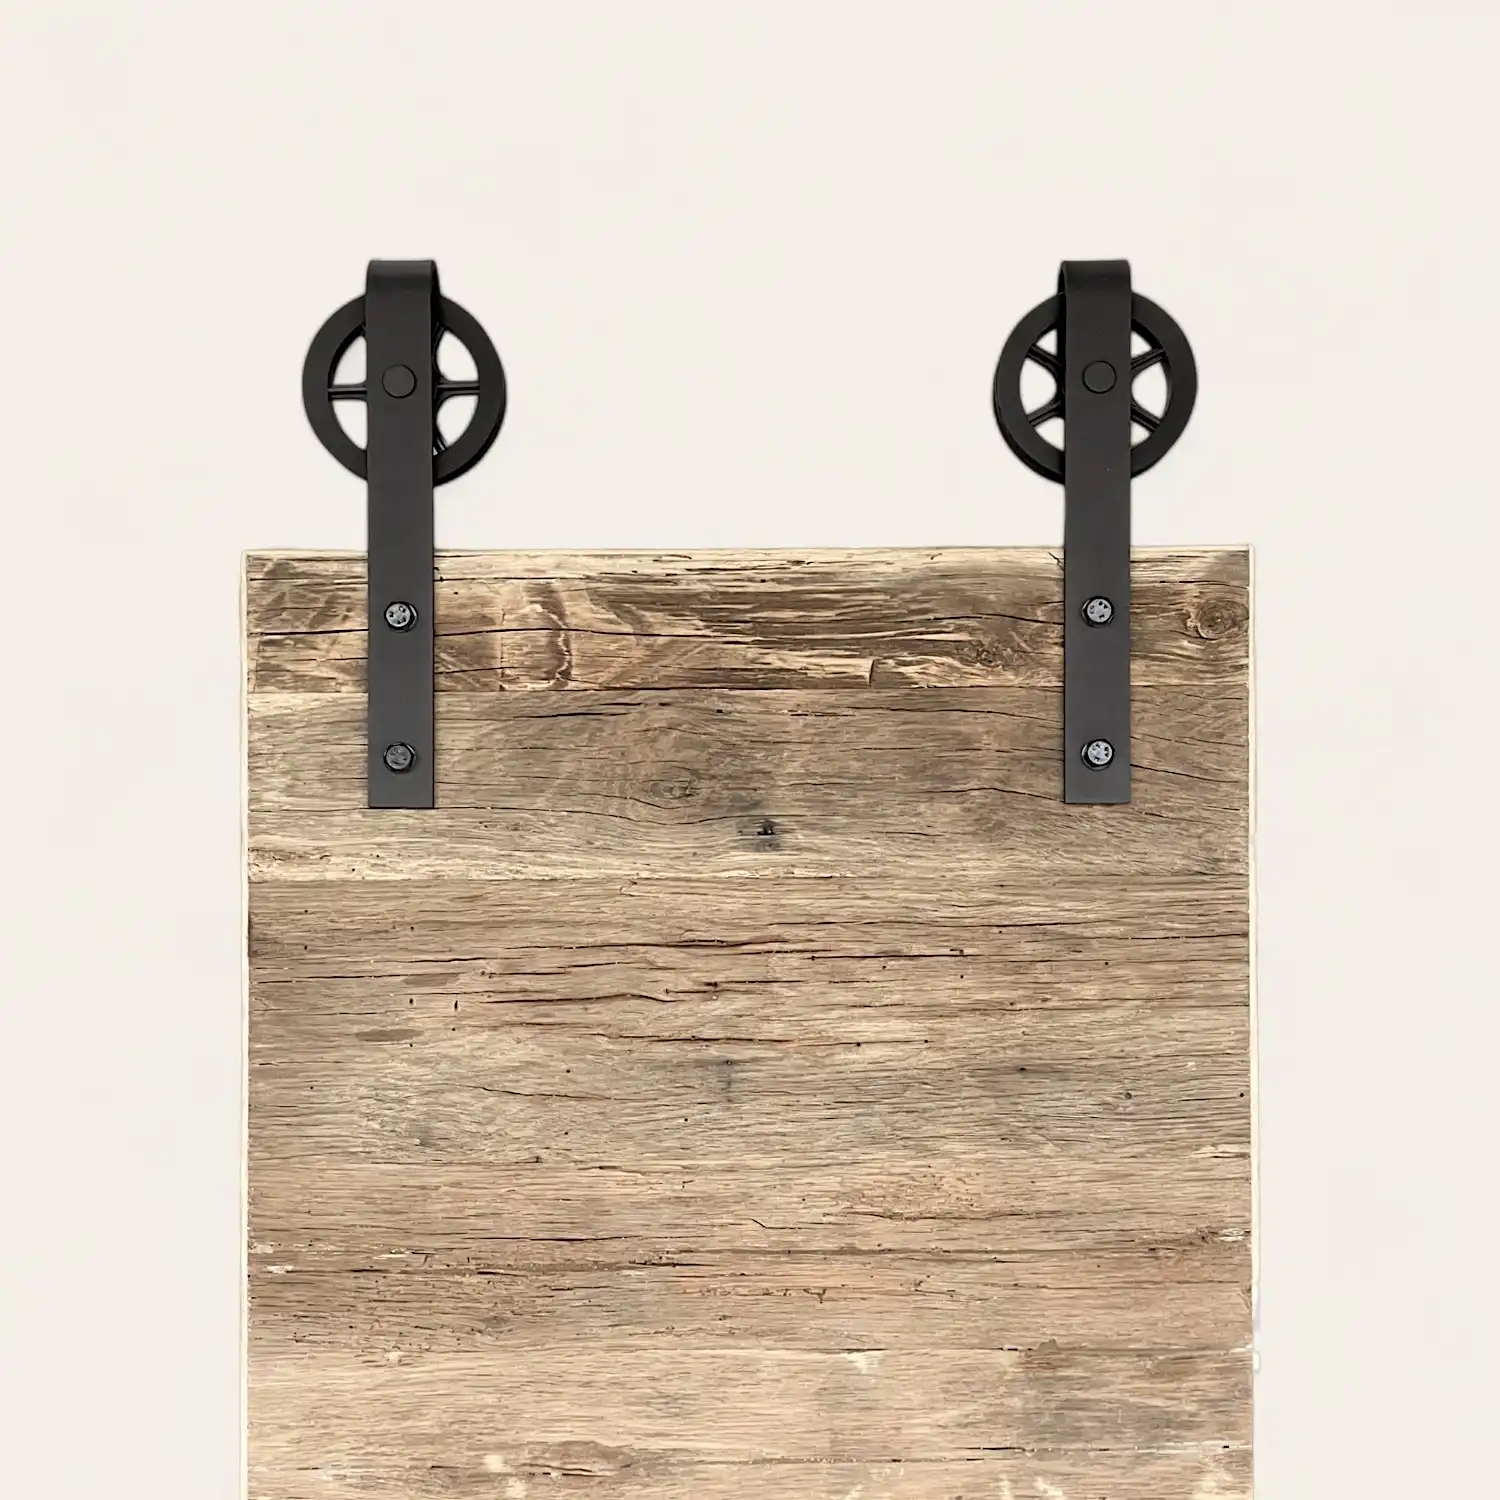  Une planche en bois rustique avec deux poignées en métal noir fixées en haut sur un fond neutre. 